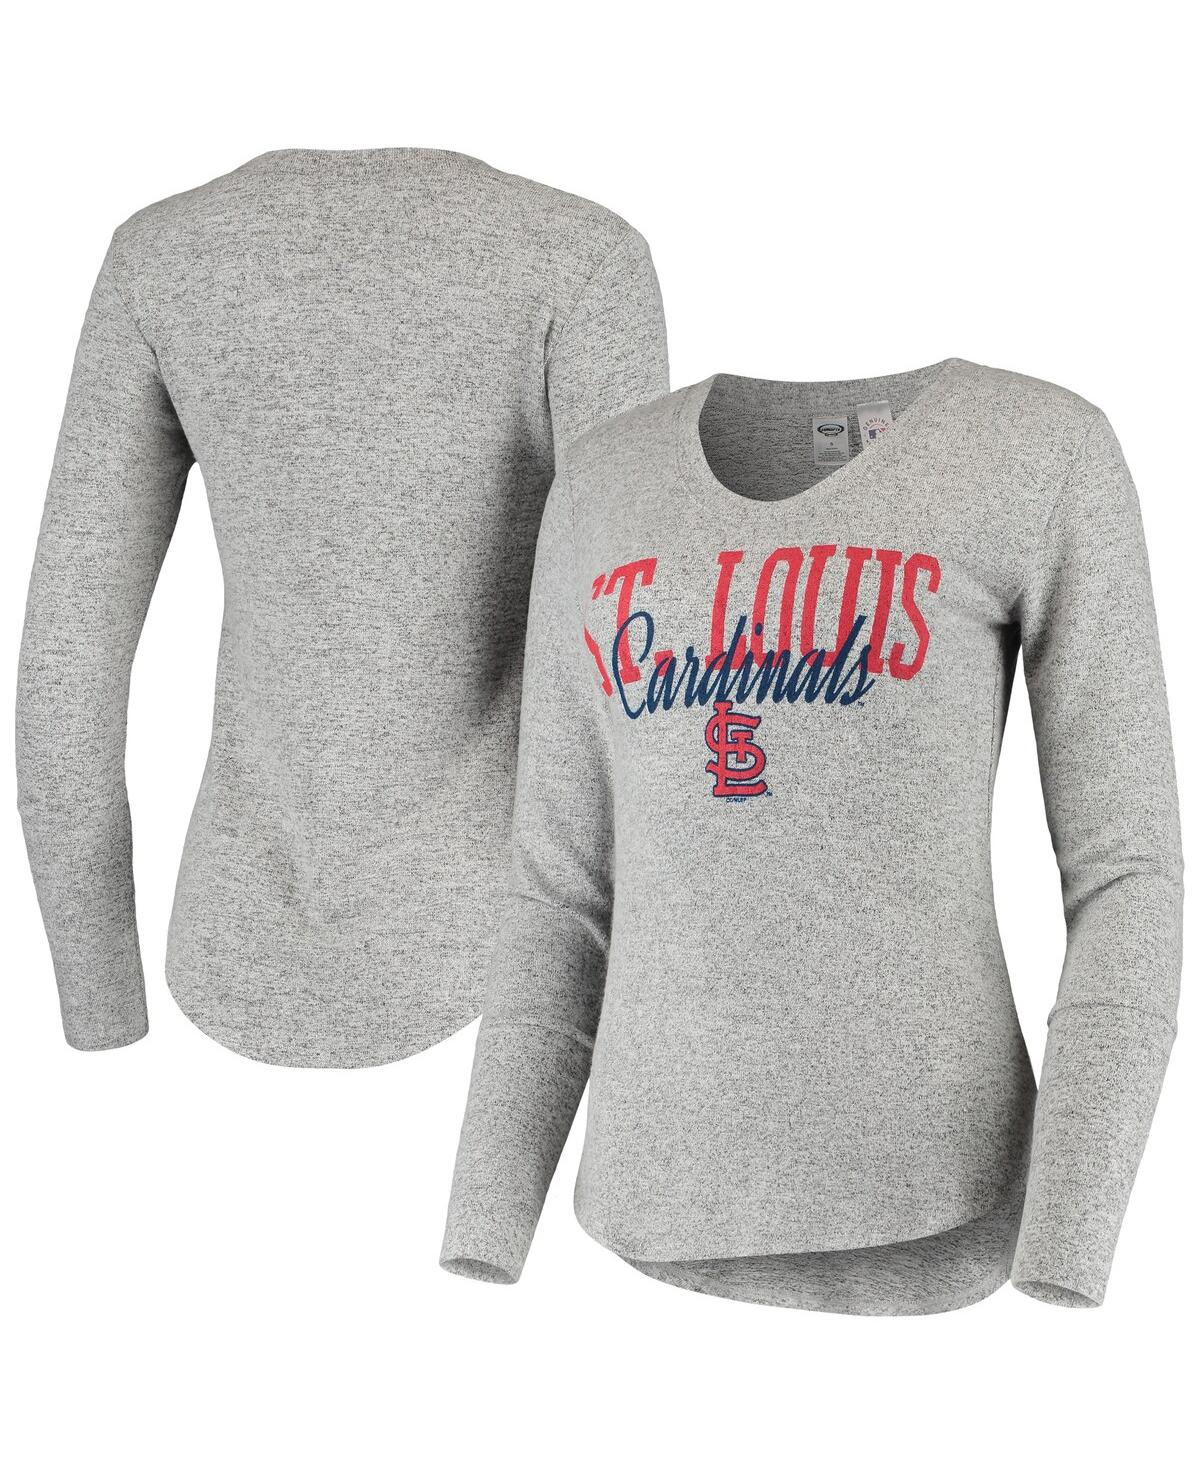 Women's Heather Gray St. Louis Cardinals Tri-Blend Long Sleeve T-Shirt - Gray